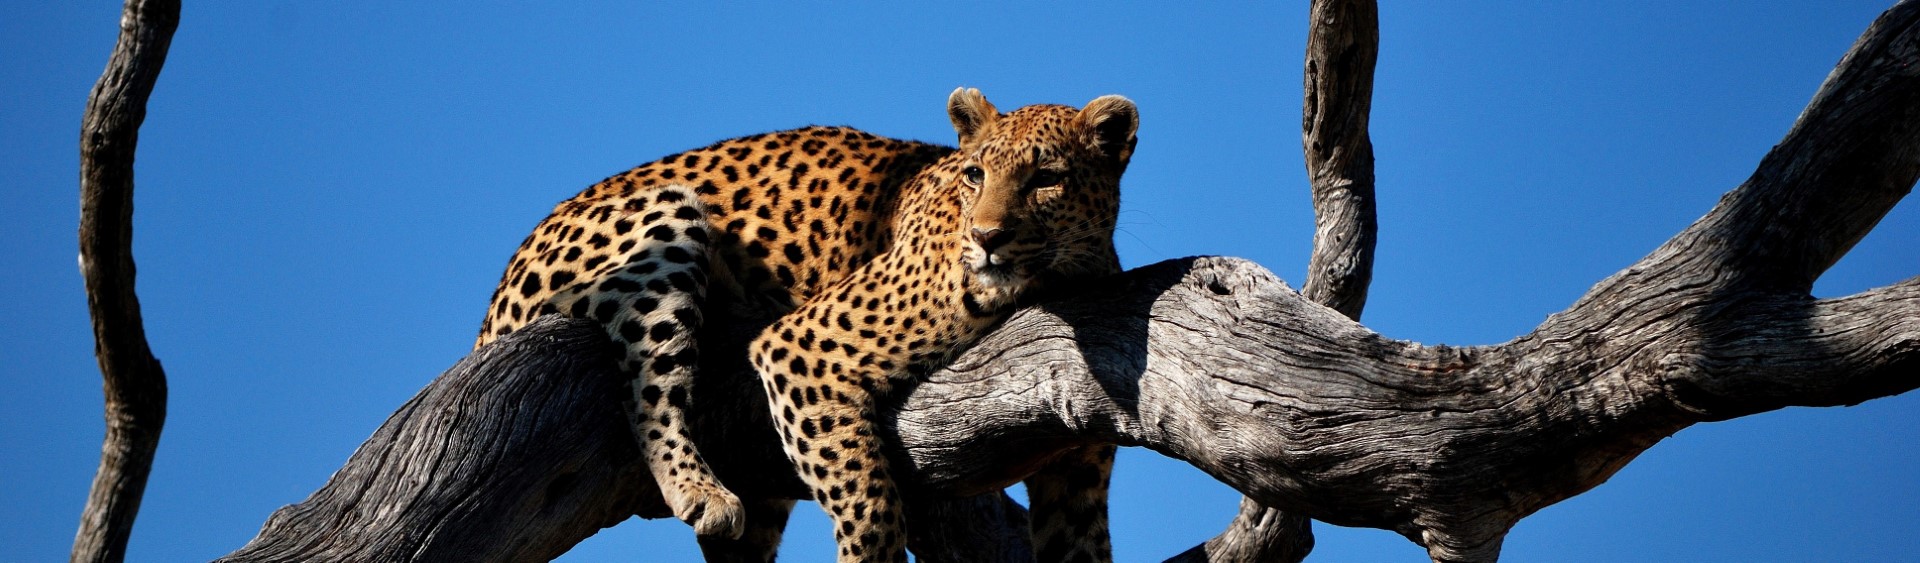 Leopard, game viewing, Kruger national park